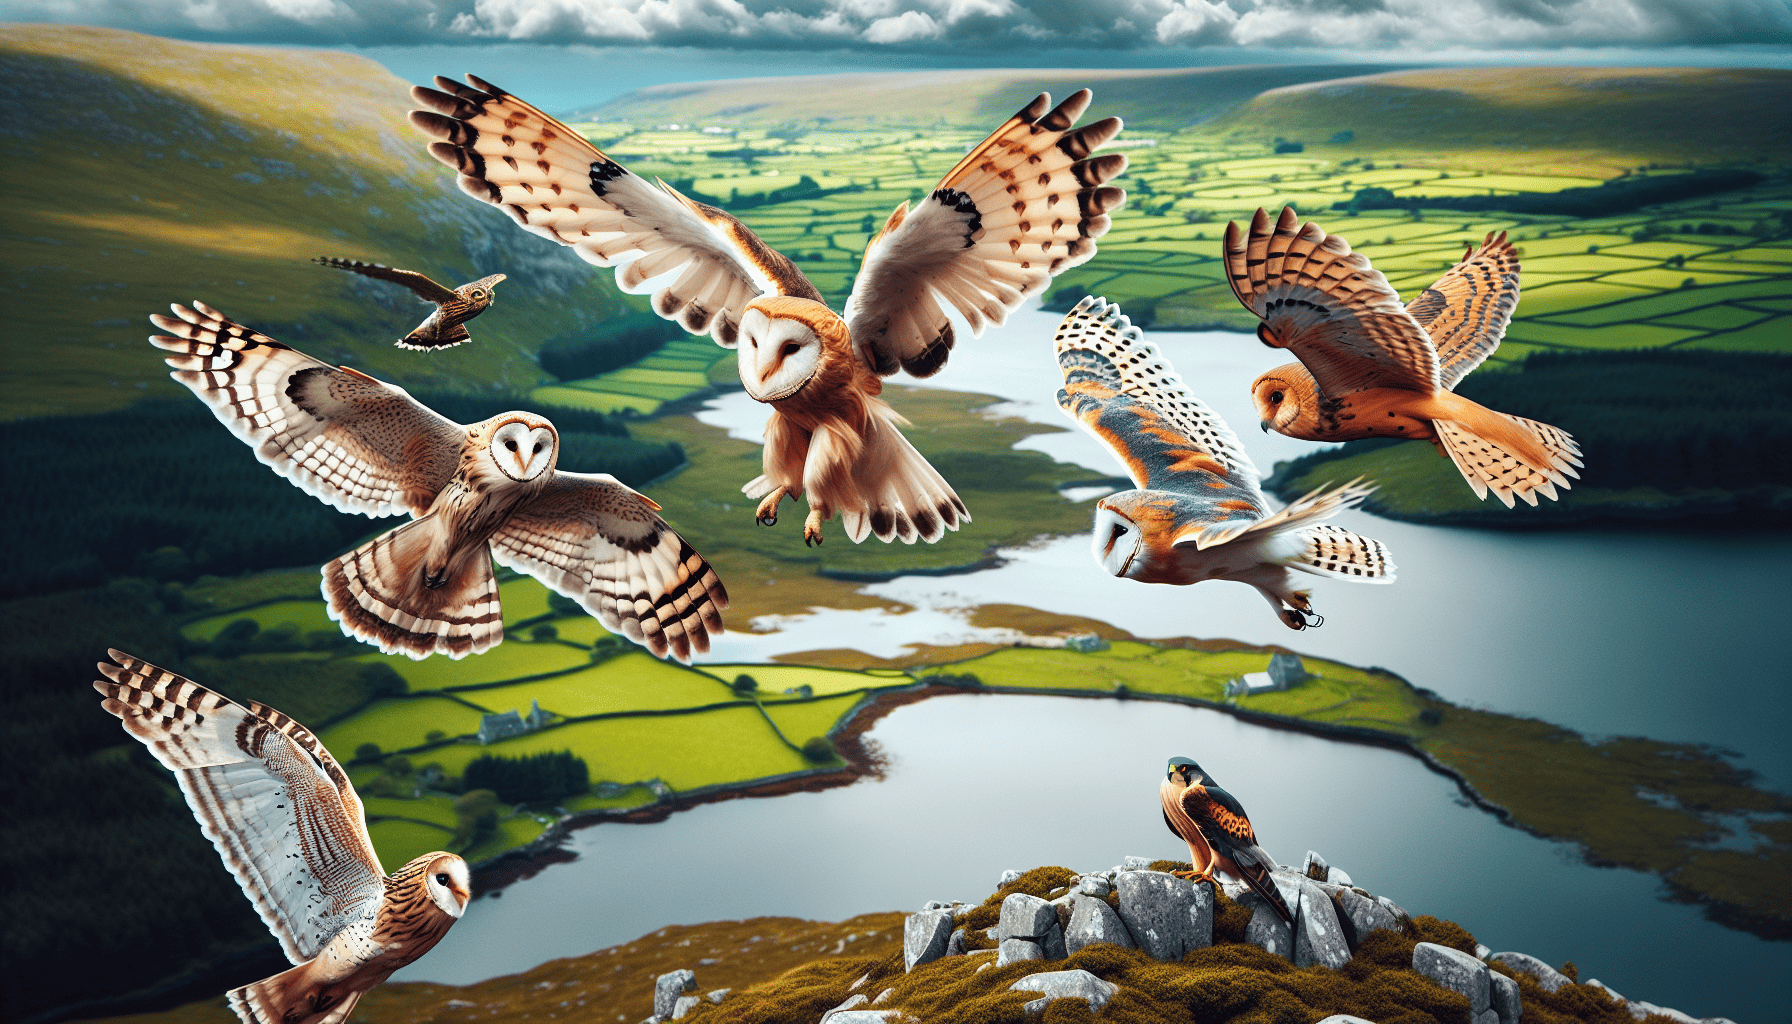 Various bird species of prey in flight over the Irish landscape